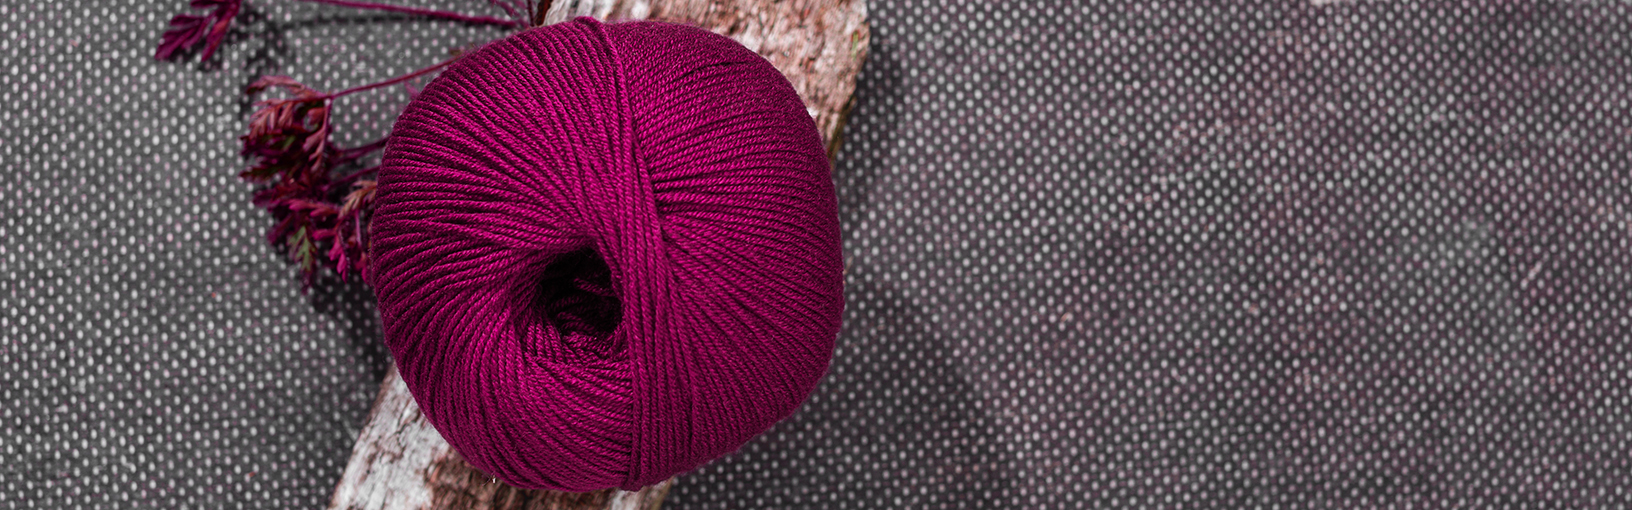 Visokokvalitetne pređe za pletenje, kukičanje i filc Lana Grossa Vune | Carapevuna